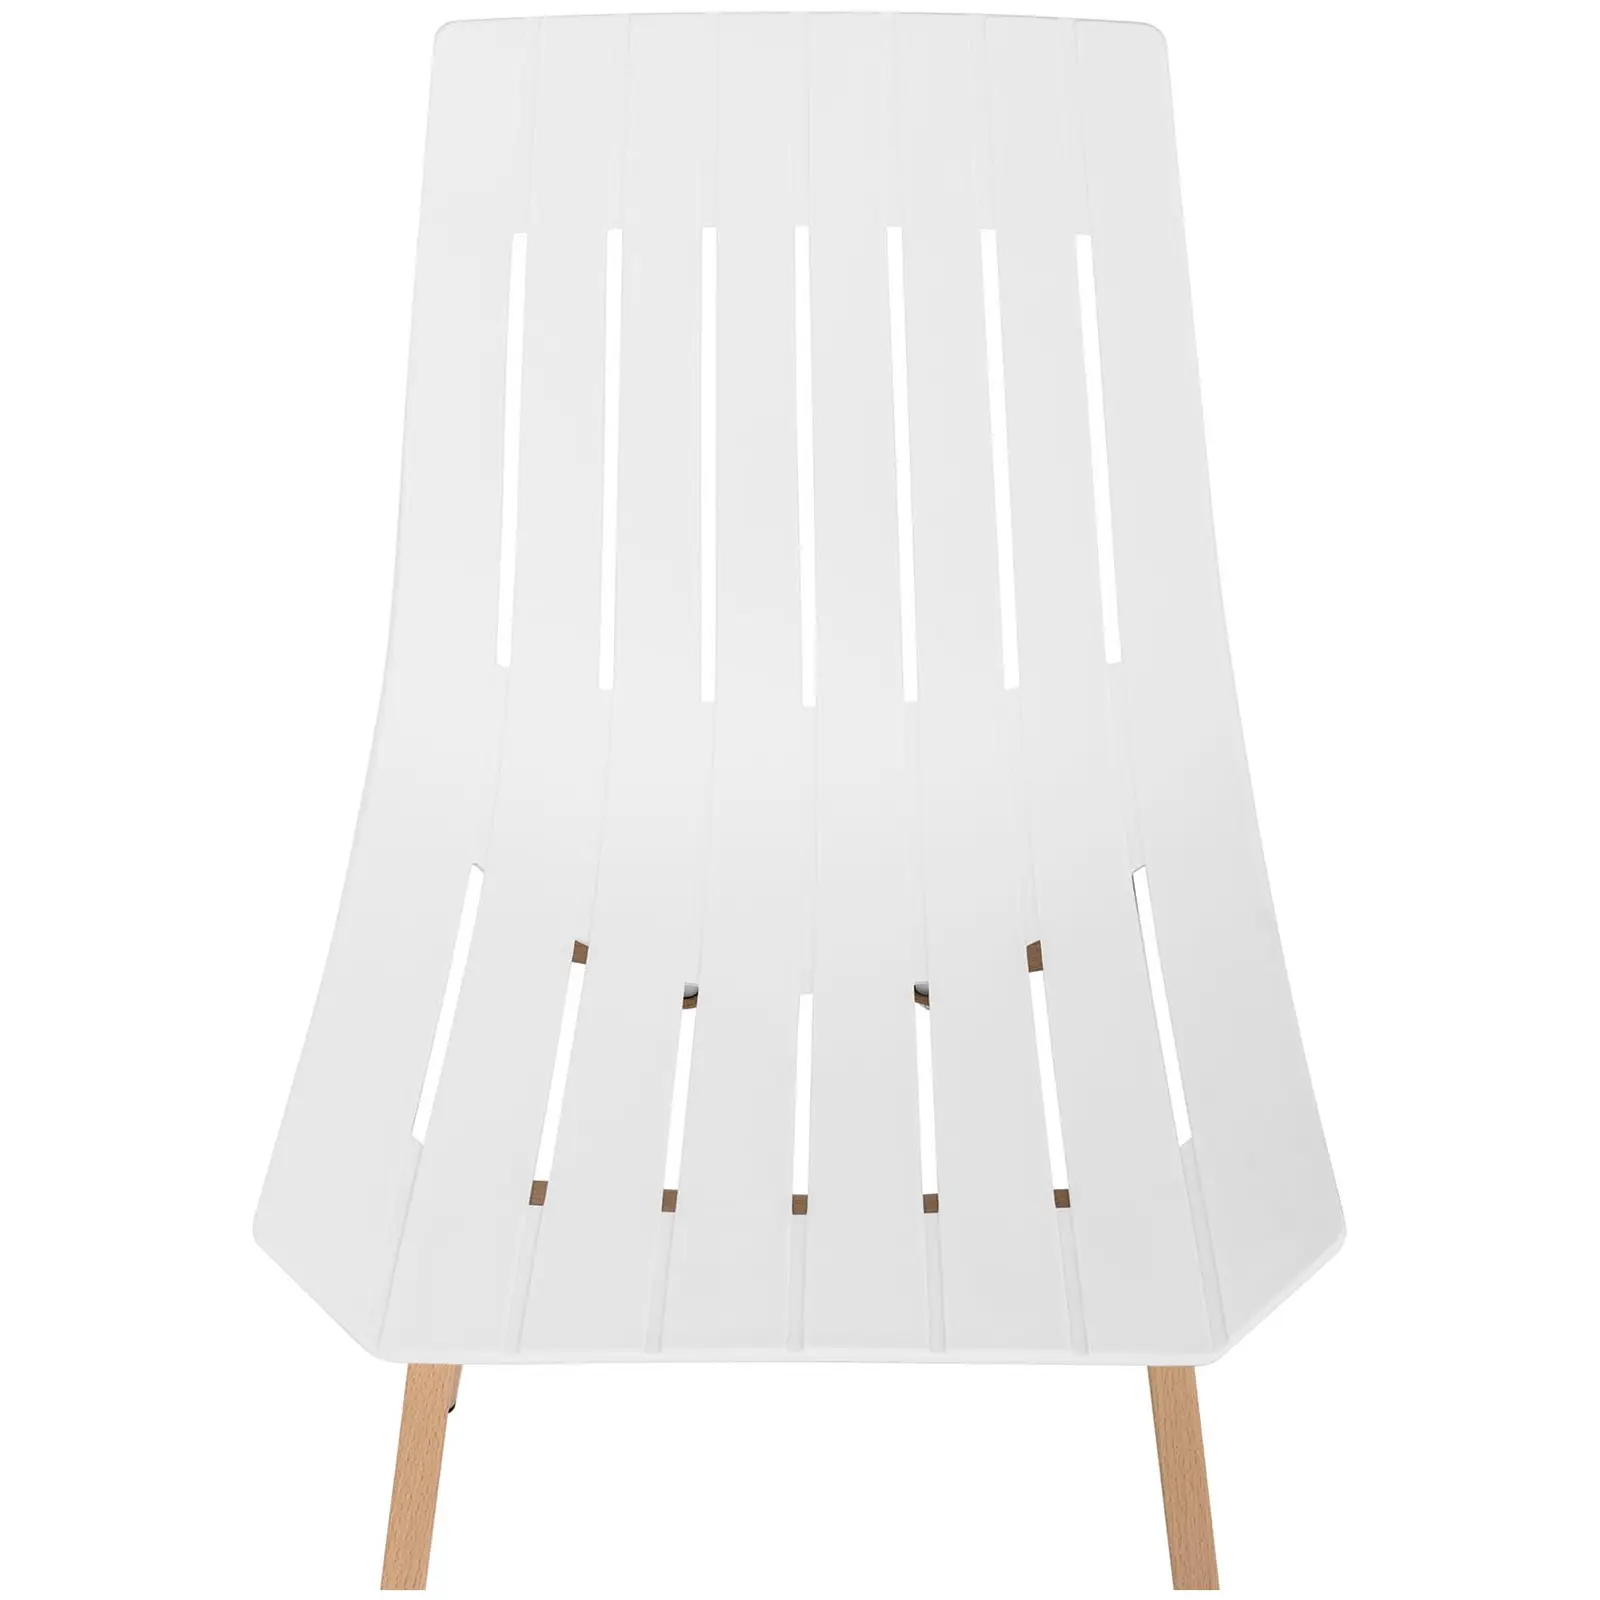 Židle - 2dílná sada - až 150 kg - sedák 50 x 47 cm - bílá